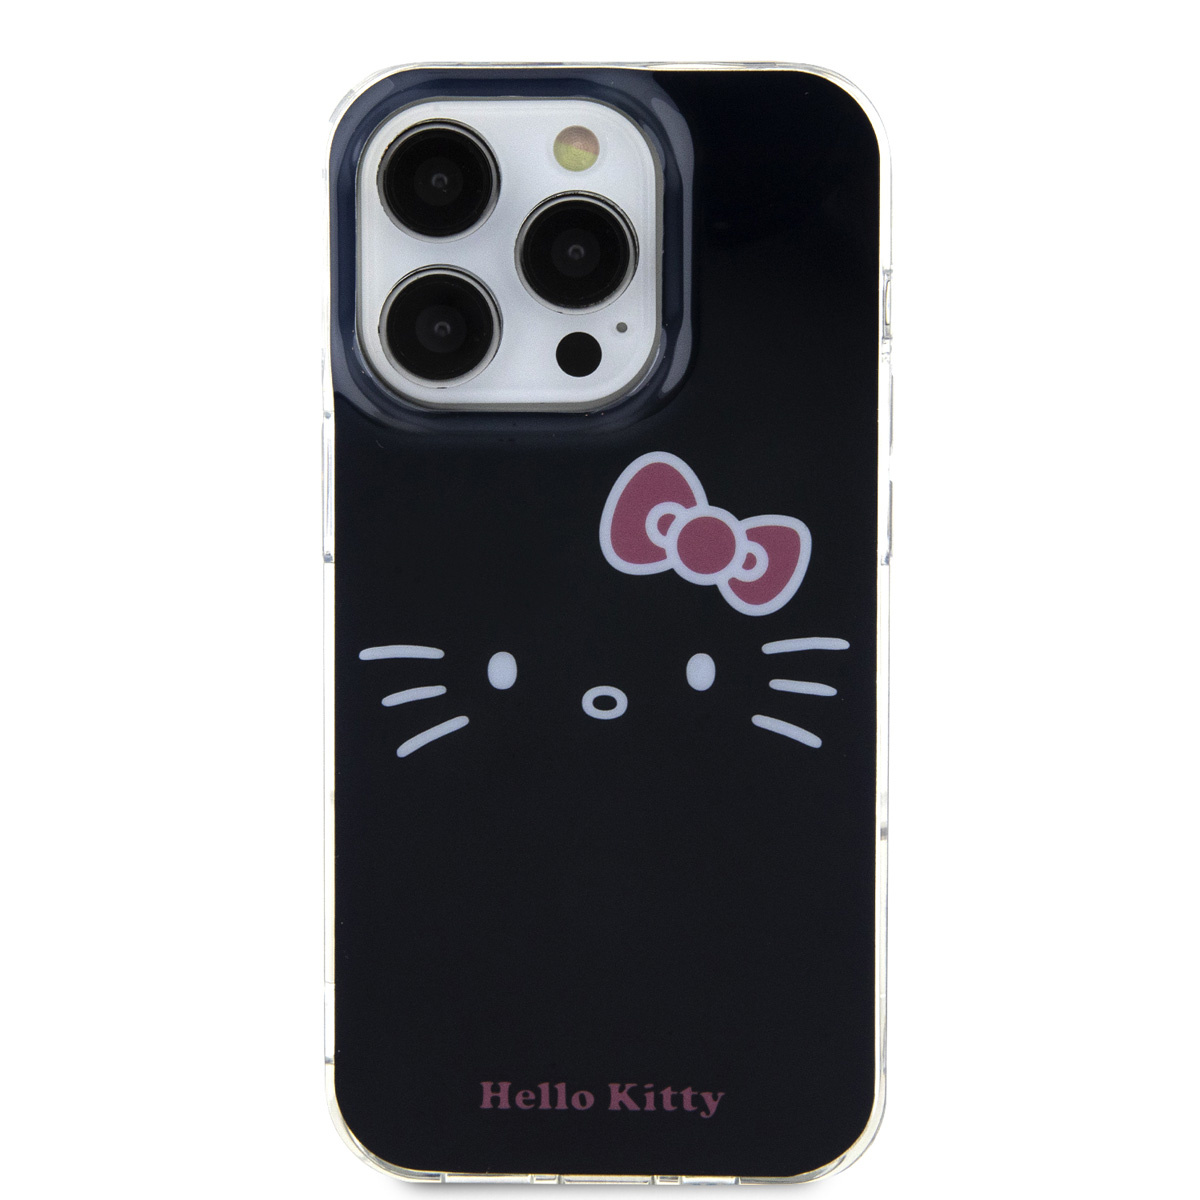 Chargeur iPhone - Accessoire - Hello Kitty - Étui de protection -  Protection câble iPhone